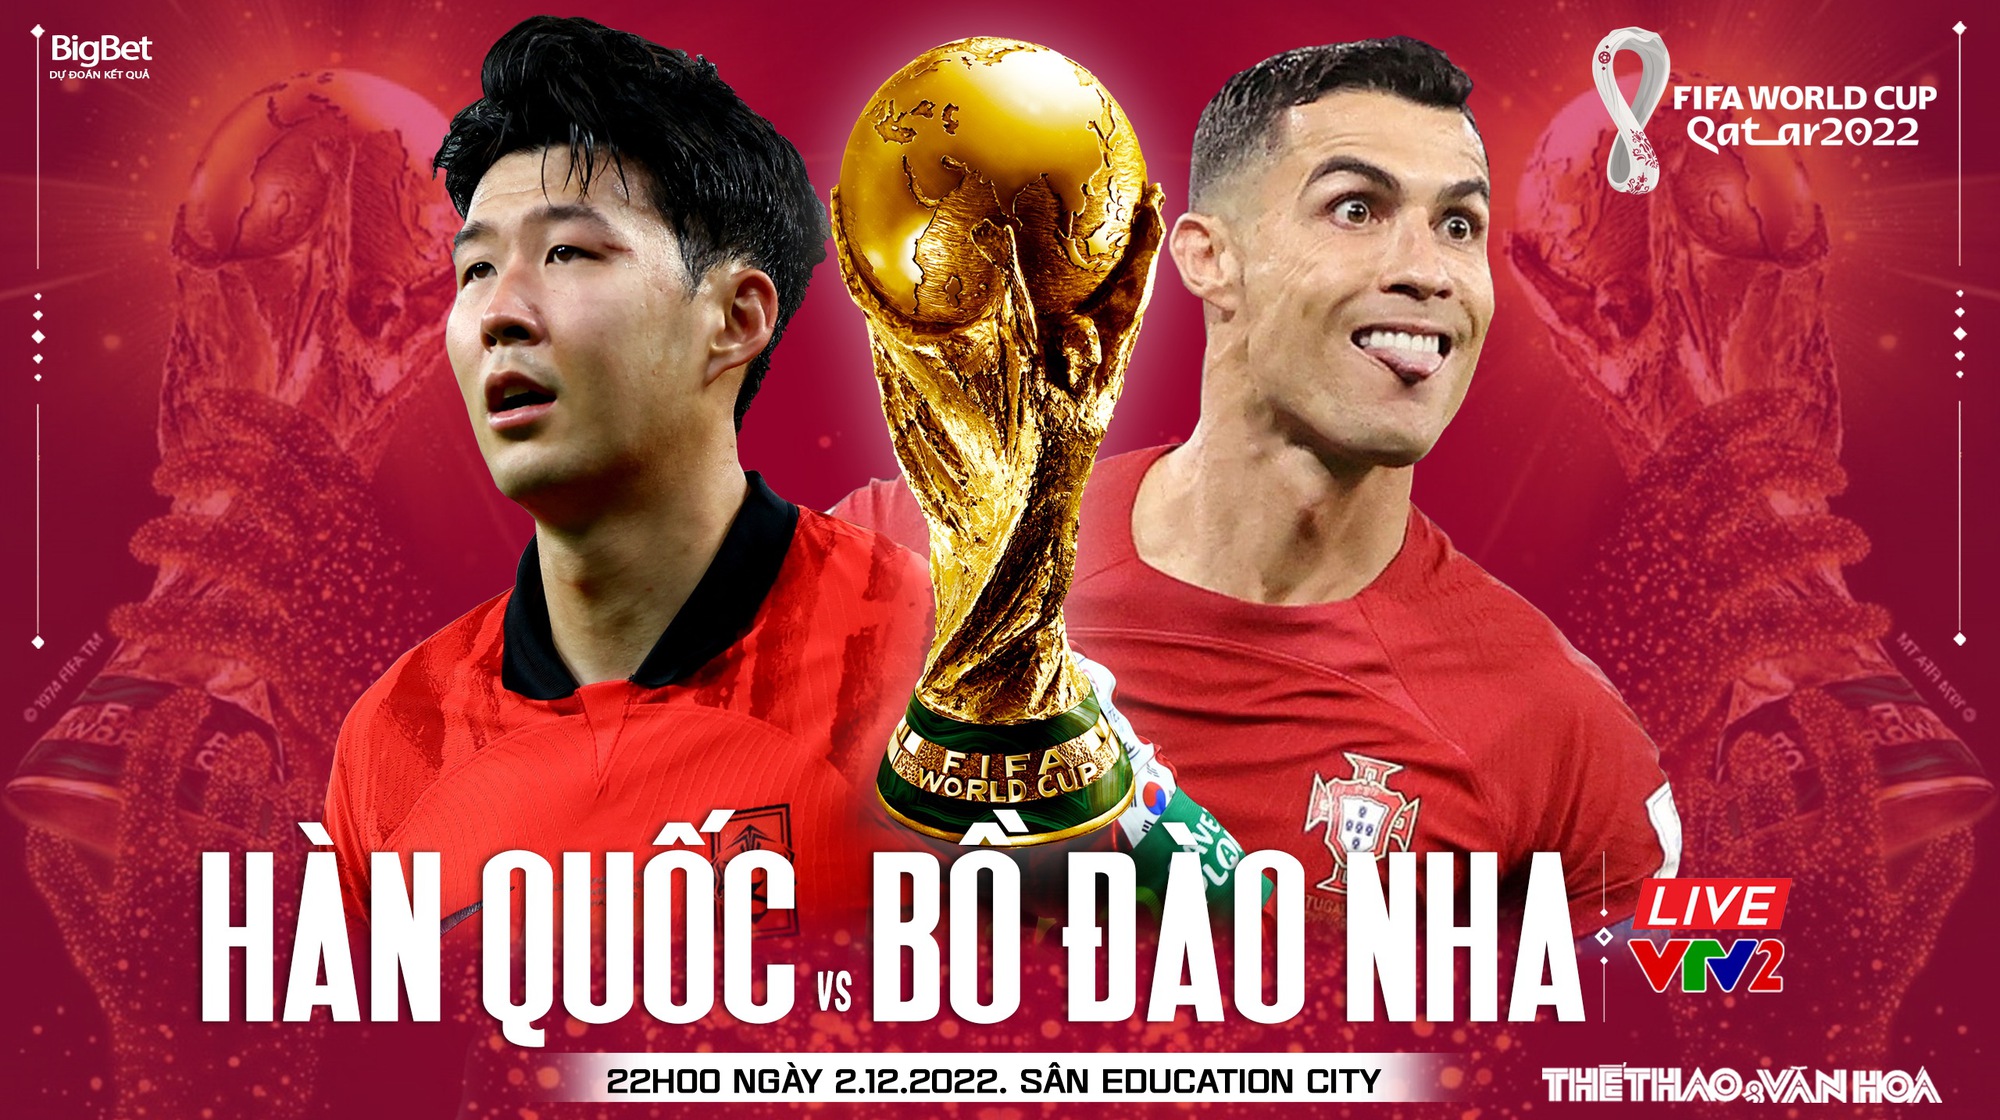 Nhận định bóng đá Hàn Quốc vs Bồ Đào Nha - World Cup 2024:
Một trận đấu đầy kịch tính sắp diễn ra giữa đội tuyển Hàn Quốc và Bồ Đào Nha tại World Cup